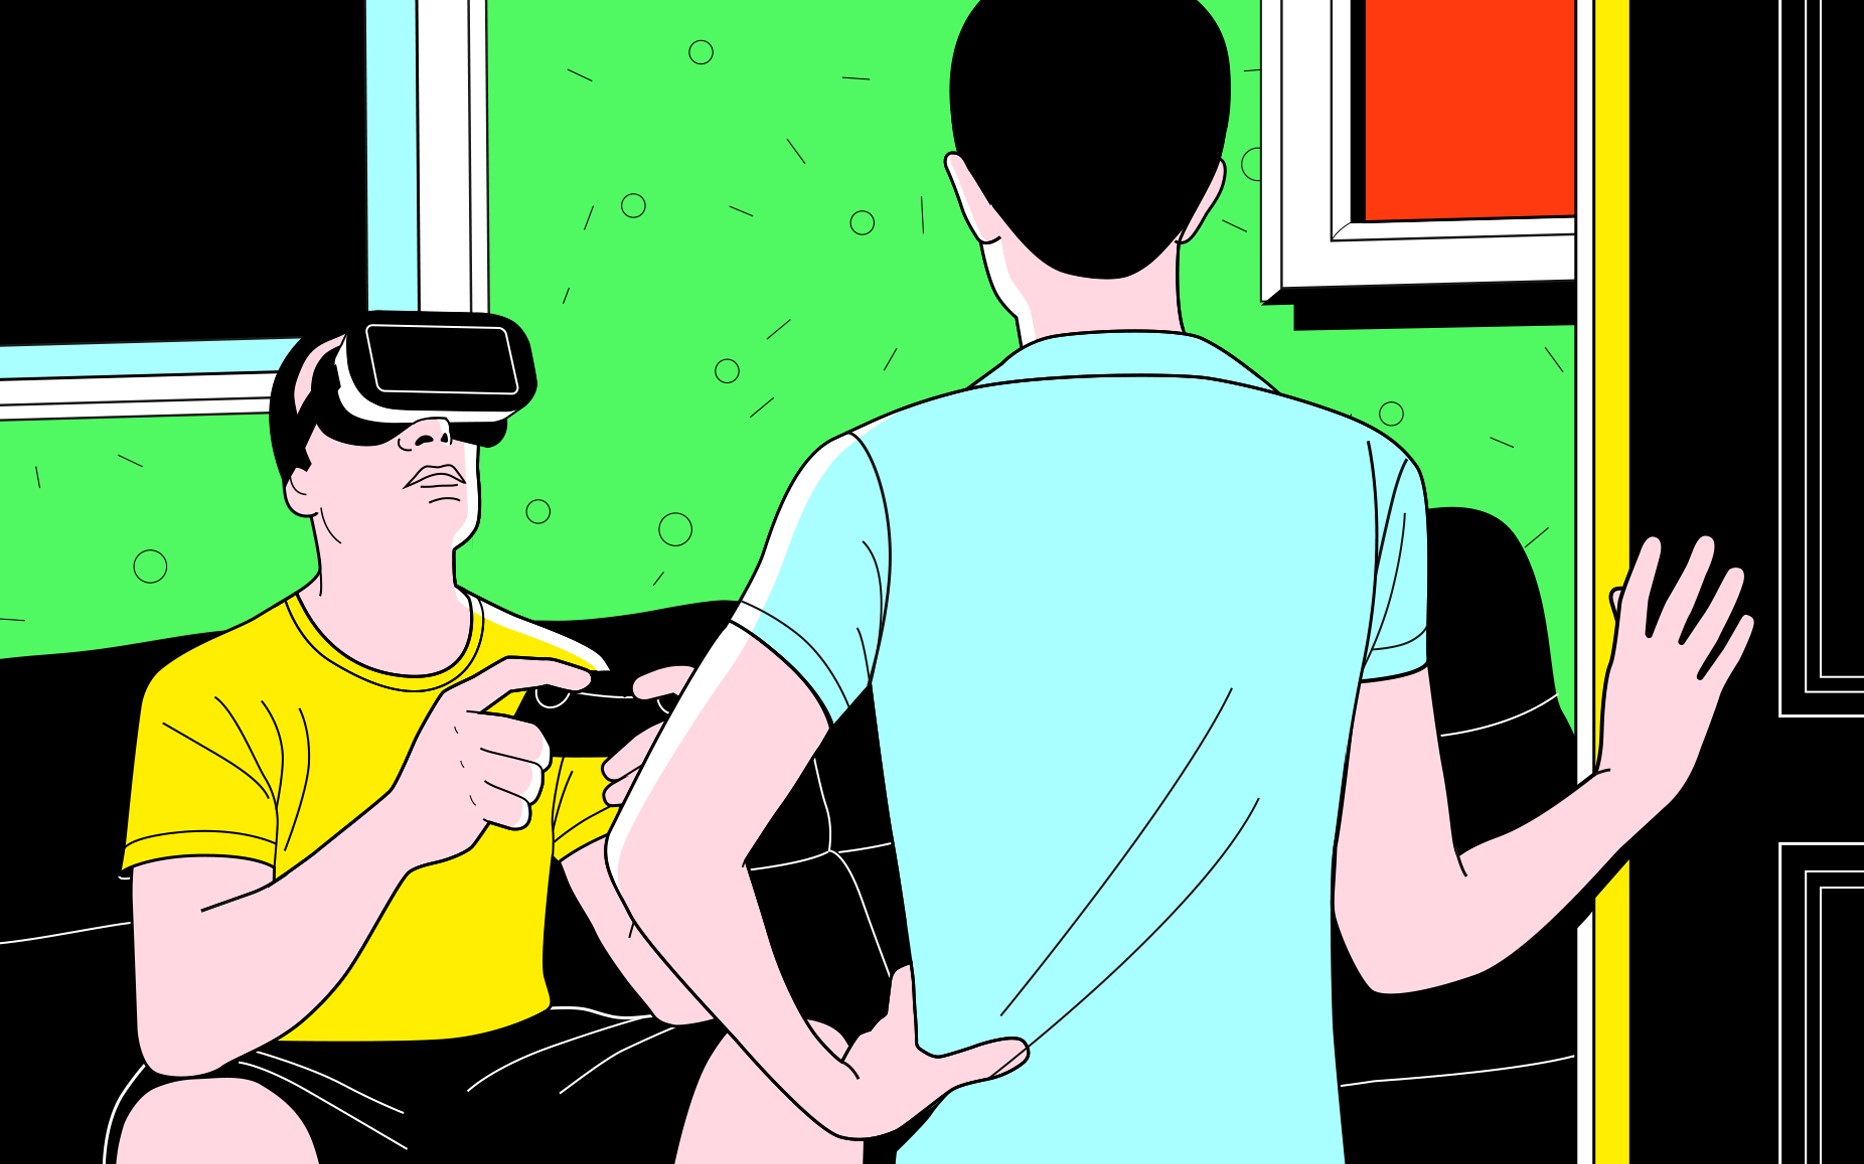 Les jeux vidéo, lorsqu'ils perturbent la vie conjugale, peuvent être le symptôme d’un couple qui ne va pas bien, estime Delphine Bigueur, thérapeute. Olivier Marty pour Le Parisien